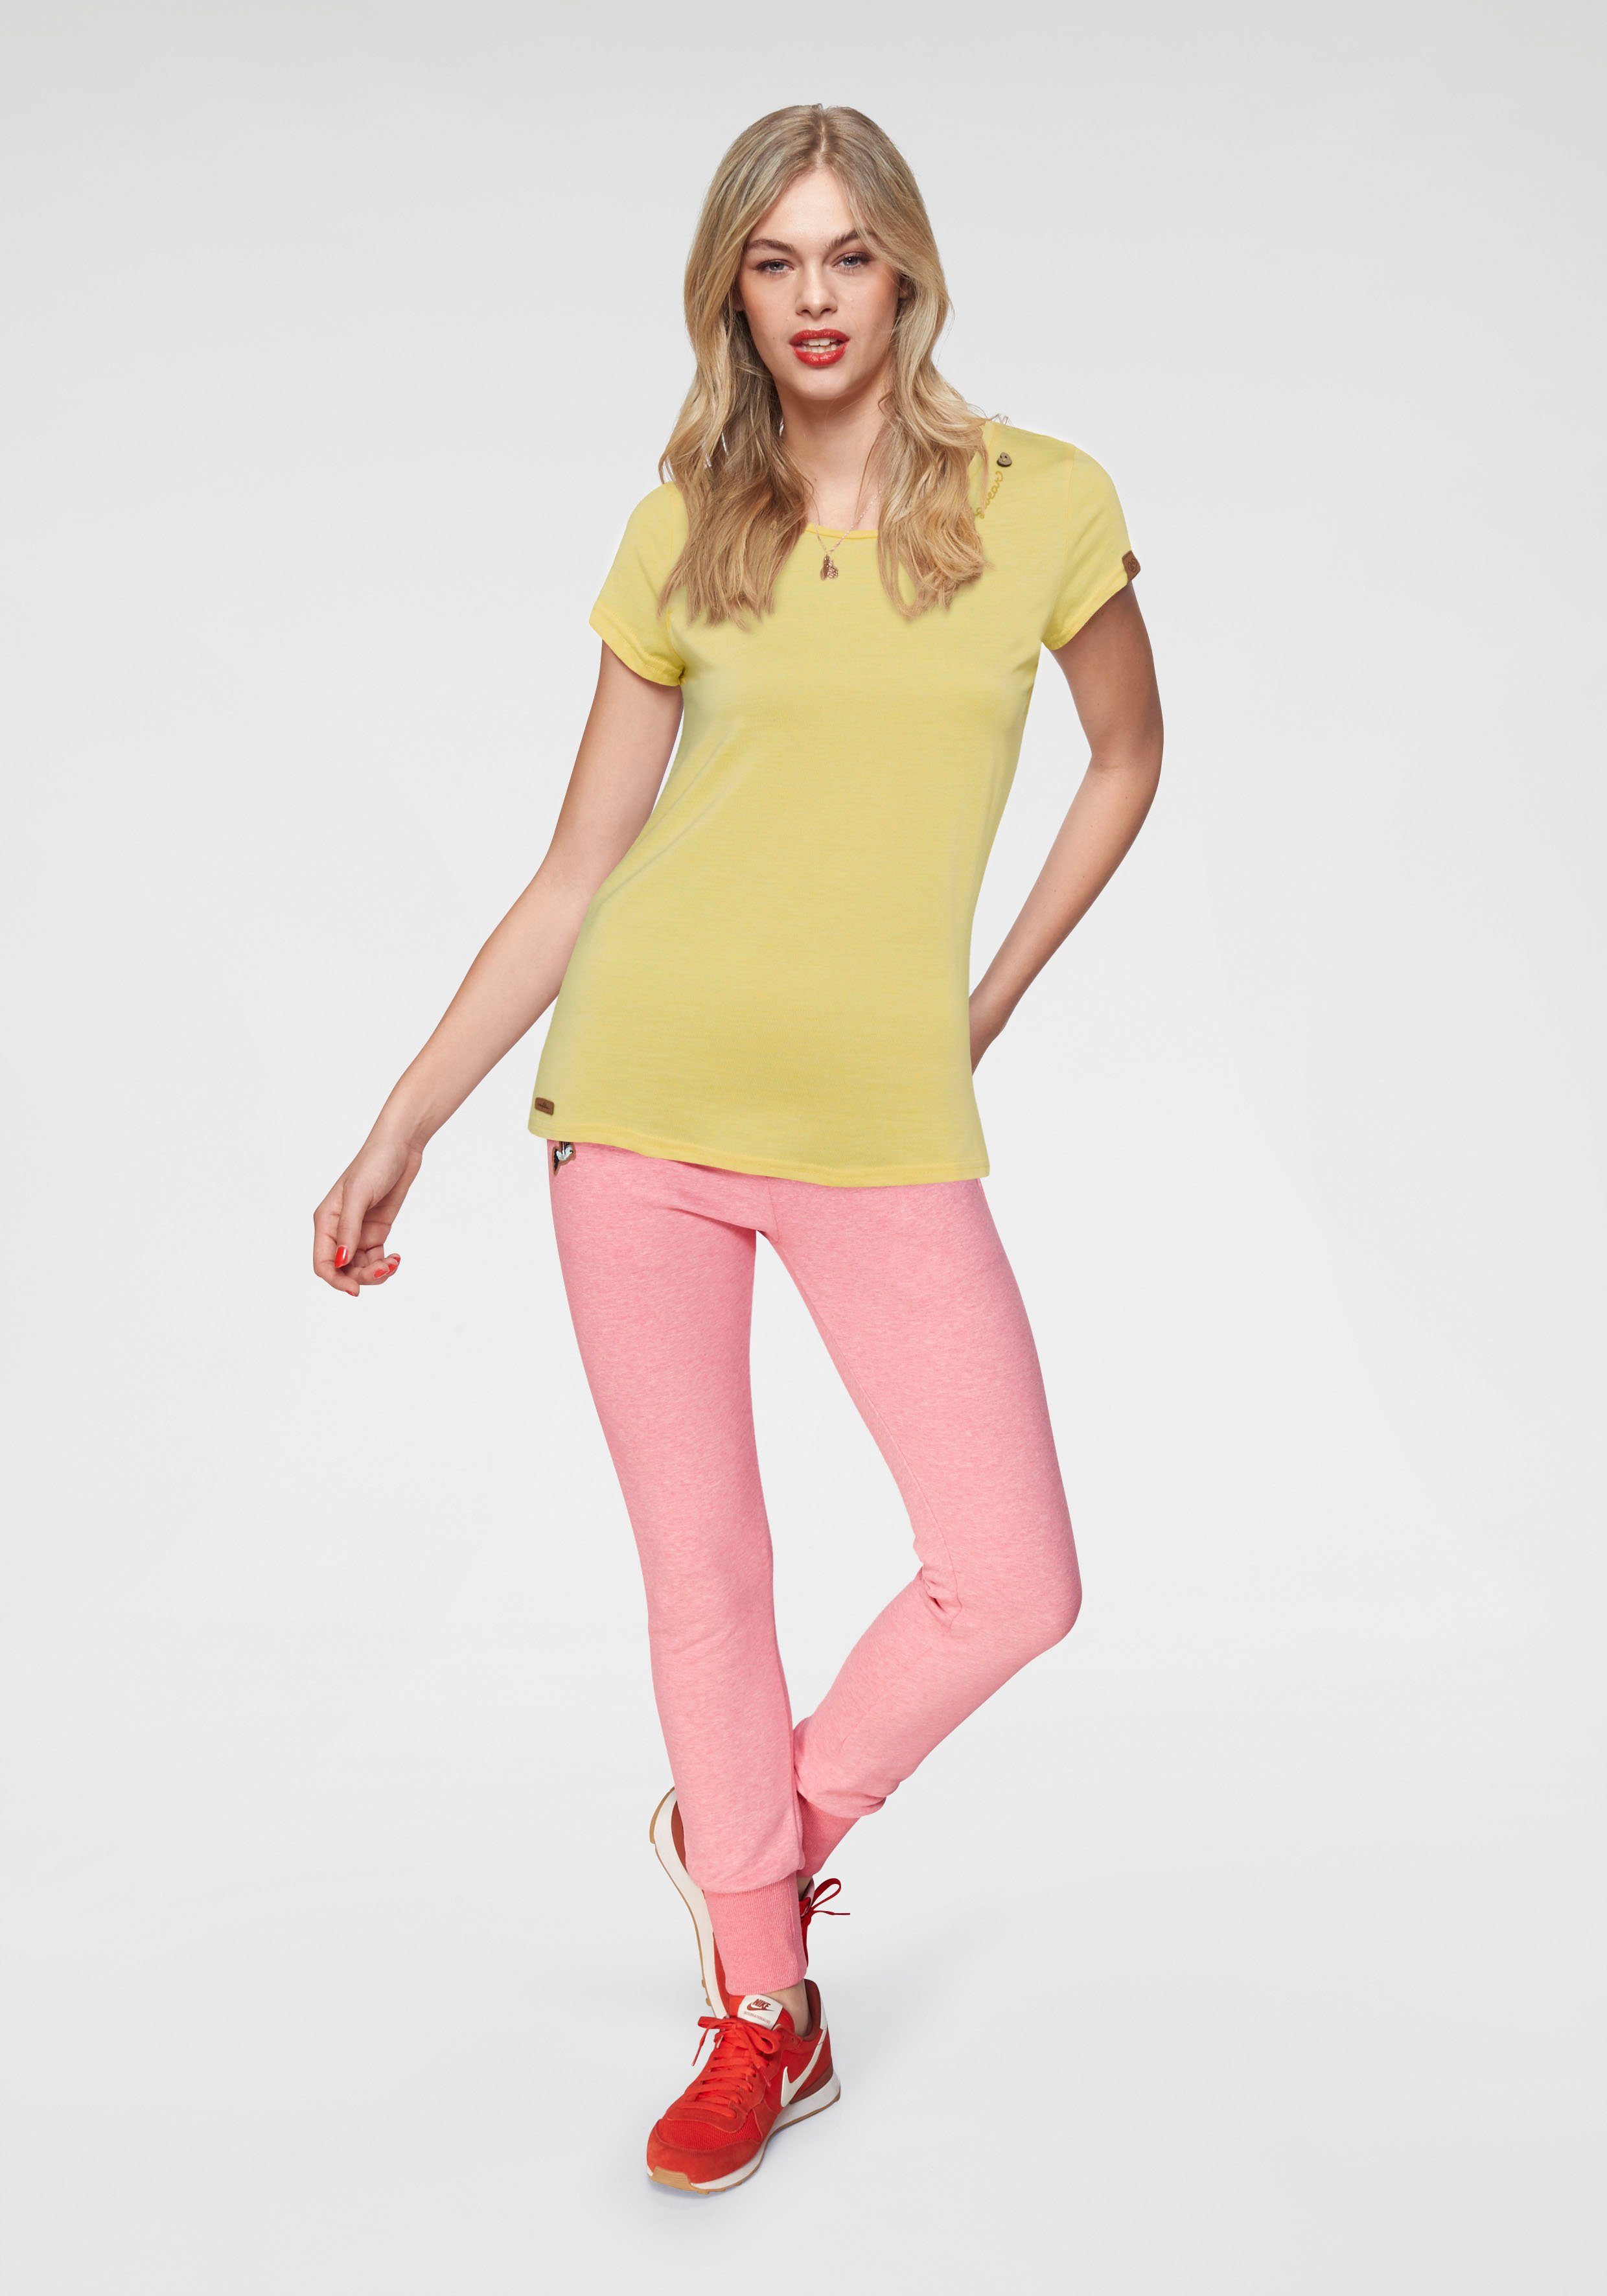 Ragwear T-Shirt MINT O mit yellow Logoschriftzug 6028 natürlicher Zierknopf-Applikation und Holzoptik in